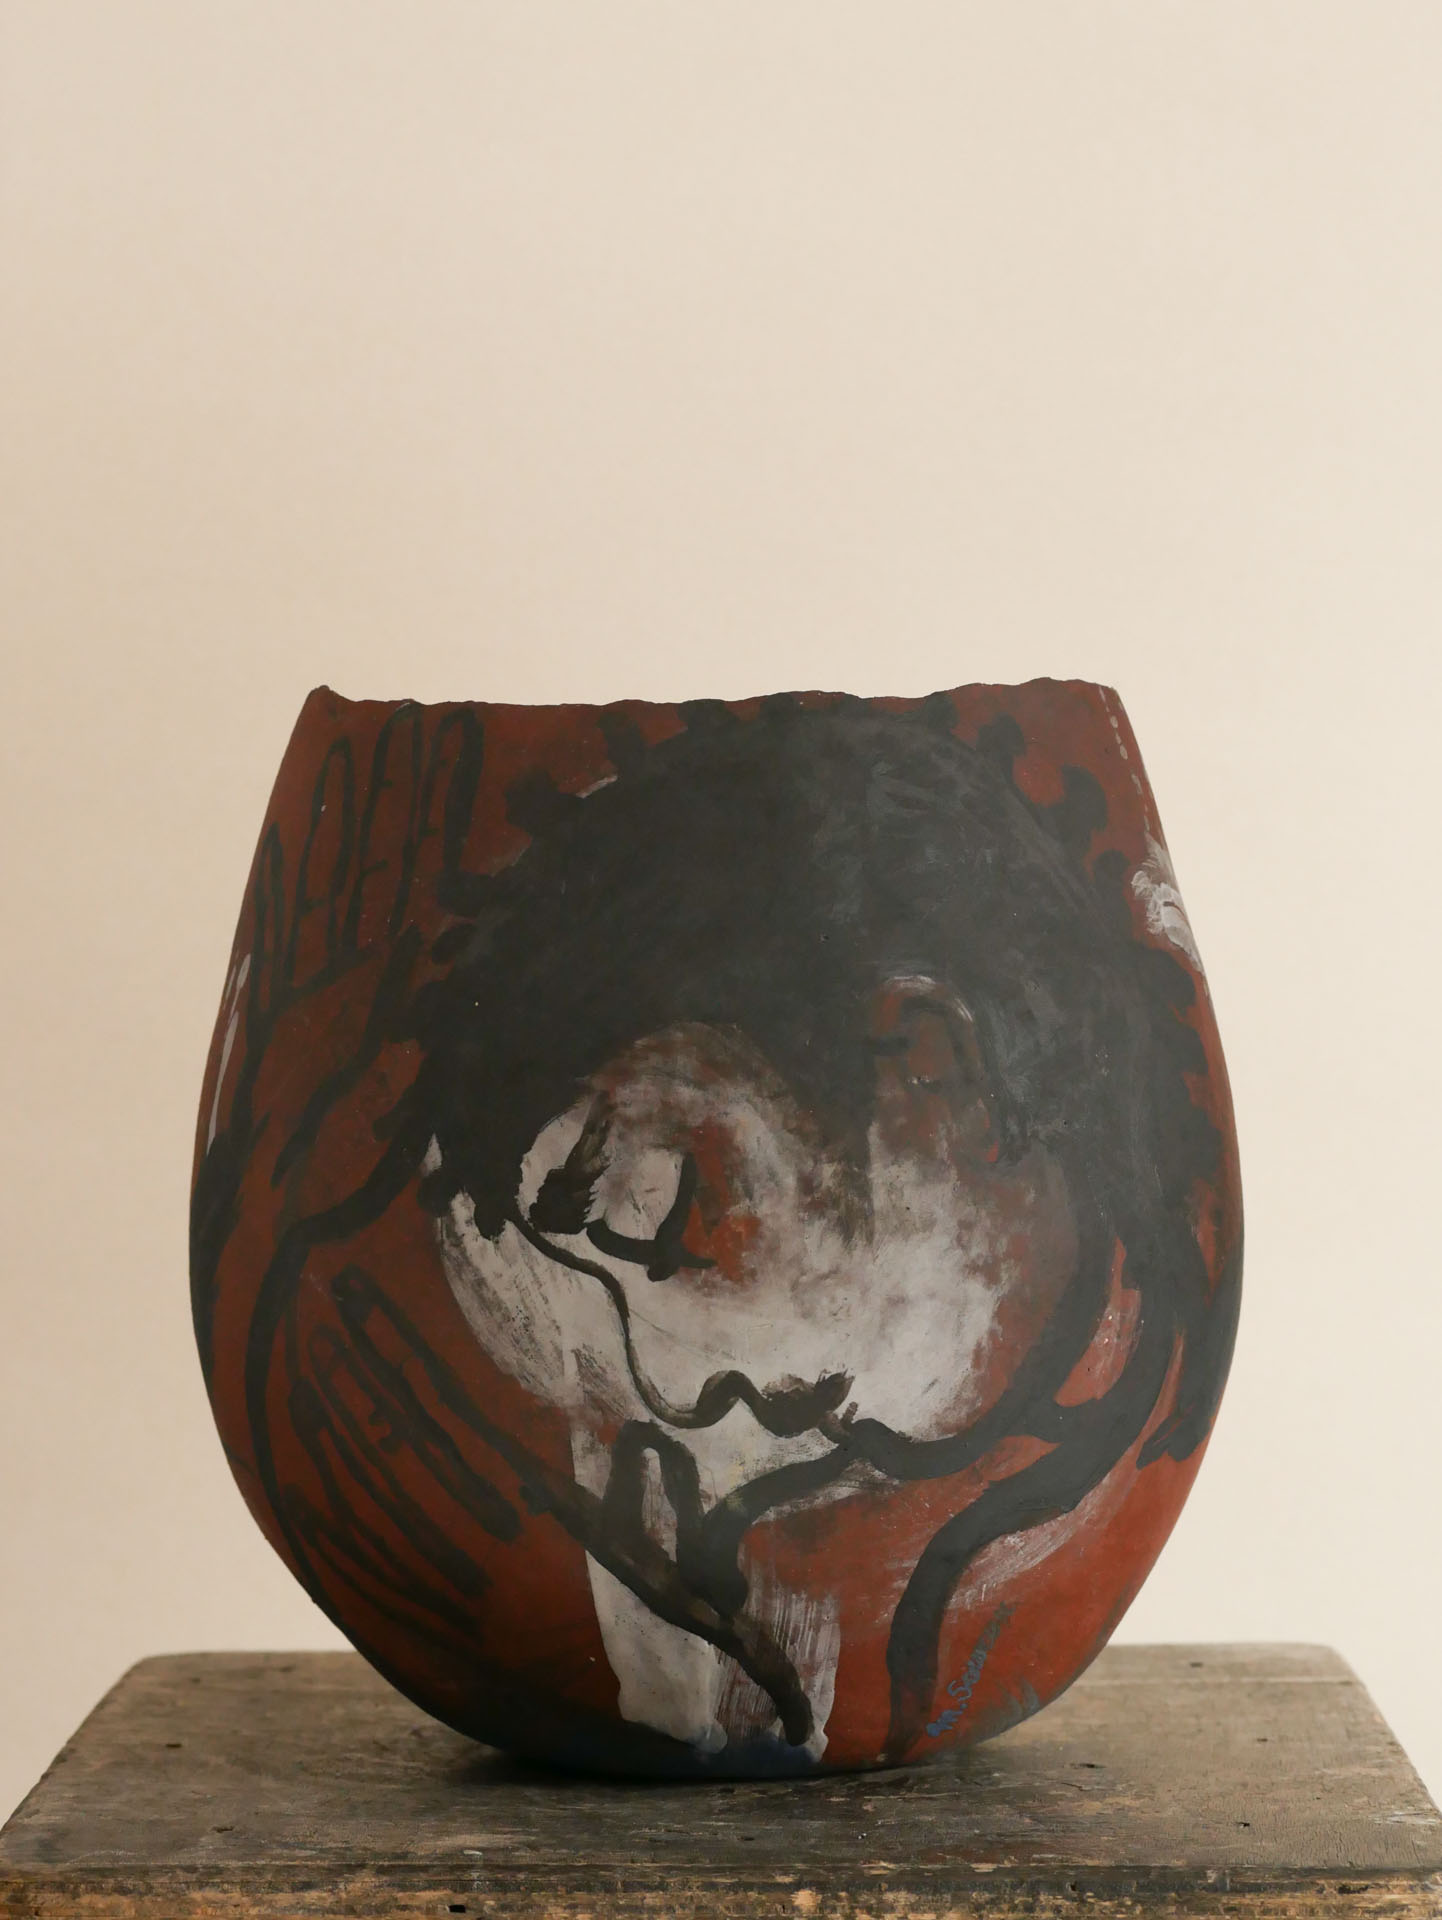 Traversée - Grès rouge, engobe de porcelaine, oxydes - Colombage, peinture à l’oxyde - Ø 28 x H. 30 cm - 2018 - Photo : Luc Noël
